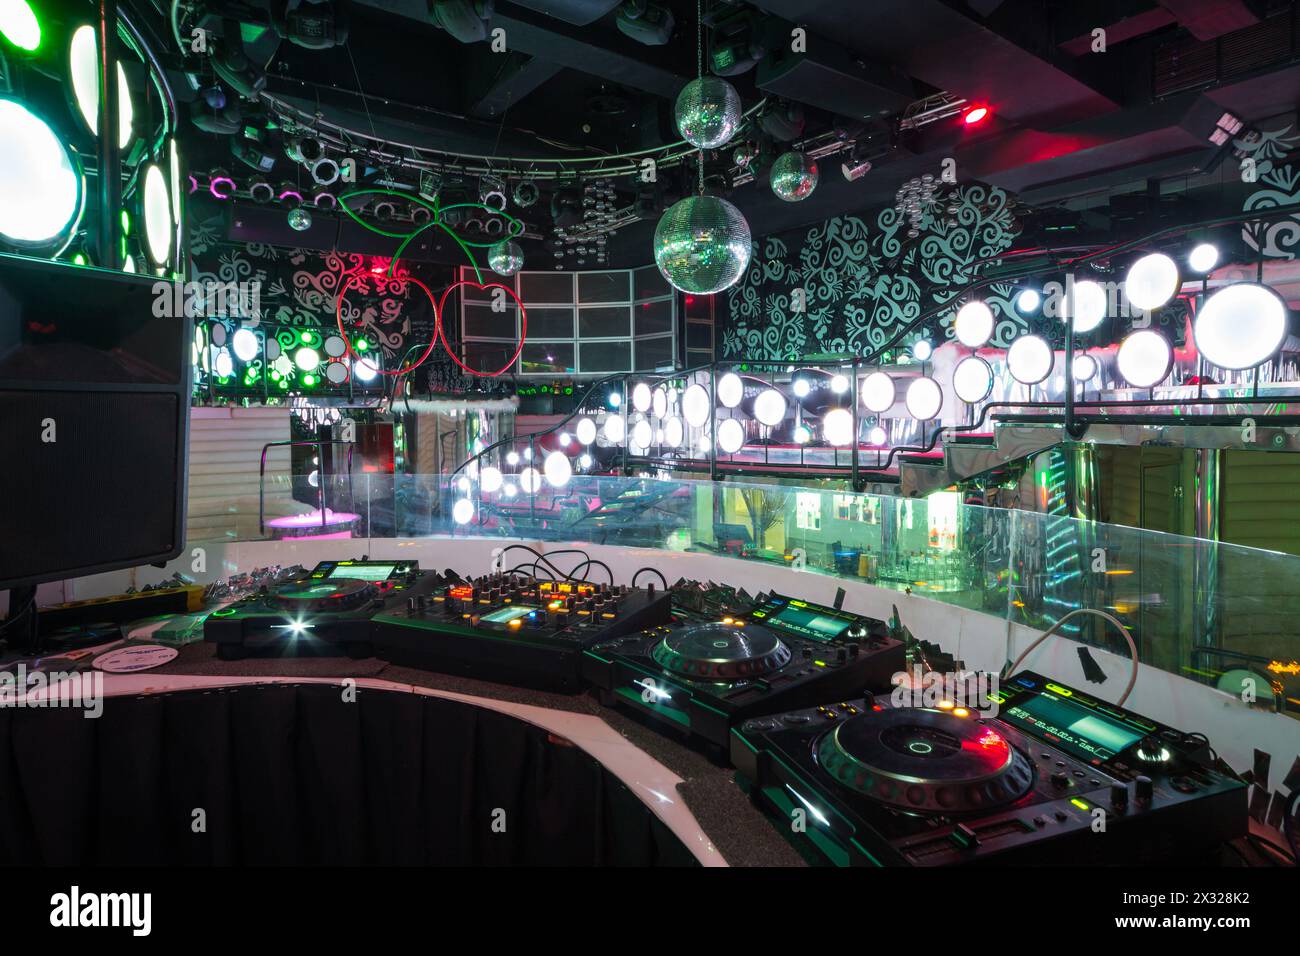 MOSKAU - 18. JAN: Der Raum im Nachtclub Pacha mit DJ-Ausrüstung und Tanzfläche am 18. Januar 2013 in Moskau, Russland. Stockfoto